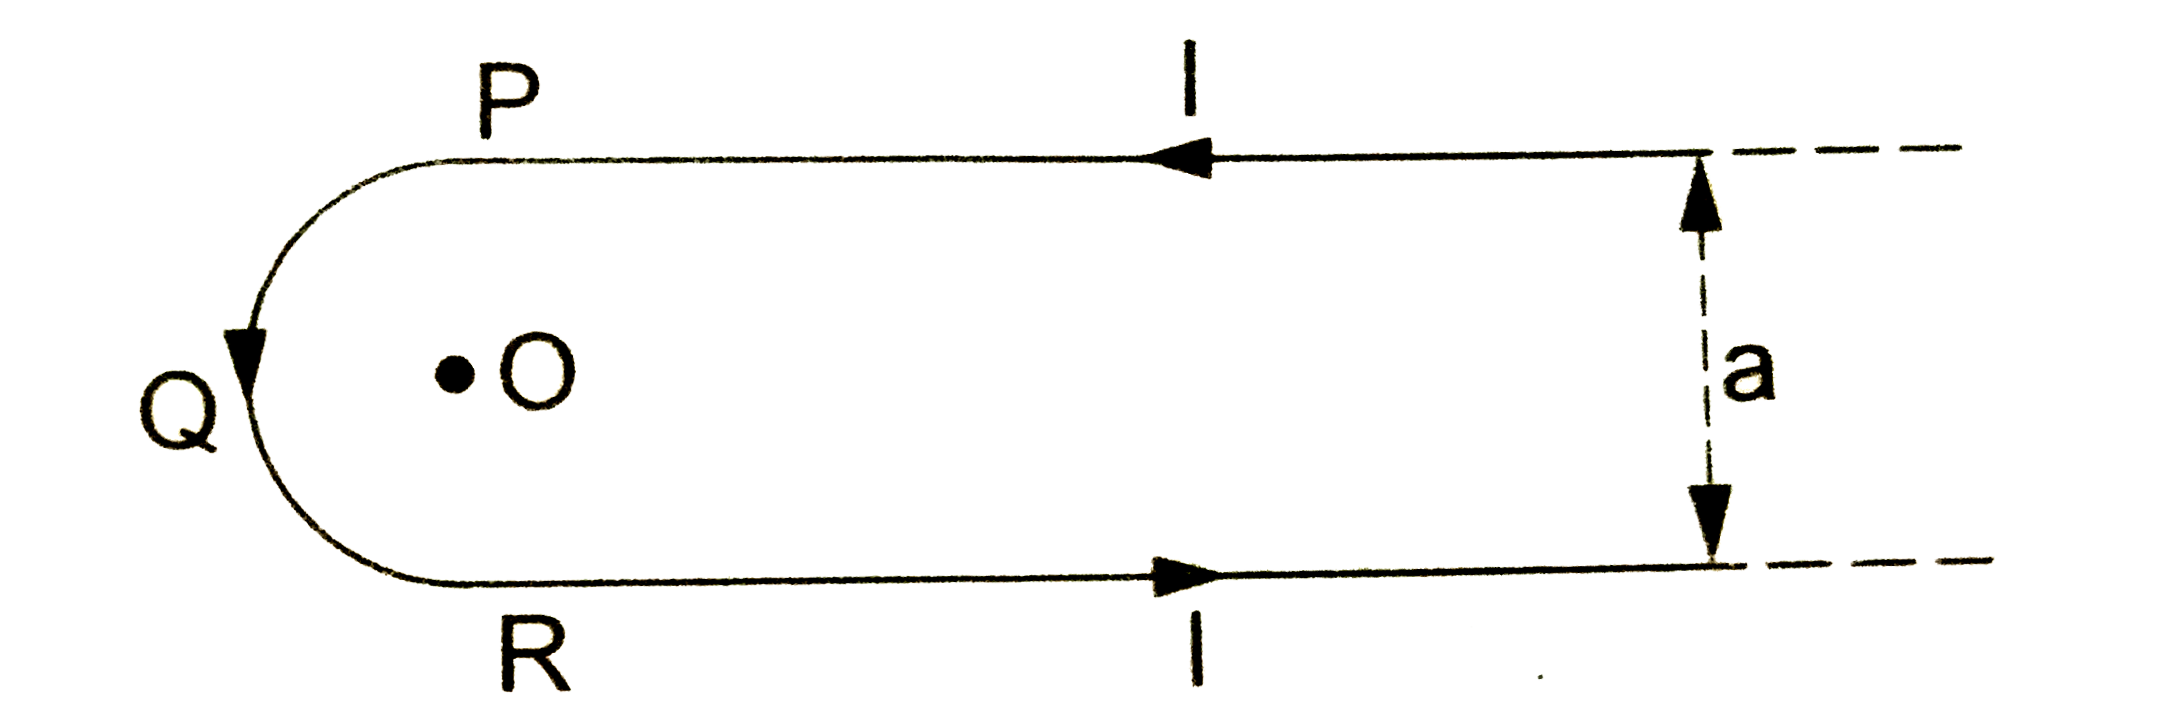 किसी लंबे तार को चित्र 2.2-7 में प्रदर्शित रूप से मोड़ा गया है जिसका विक्रय भाग PQR एक अर्धवृत्त है तथा सीधे समांतर भागो के बीच a दुरी है। यदि तार से प्रवाहित धारा I हो तो अर्धवृत्त के केंद्र O पर चुंबकीय क्षेत्र ज्ञात करे।